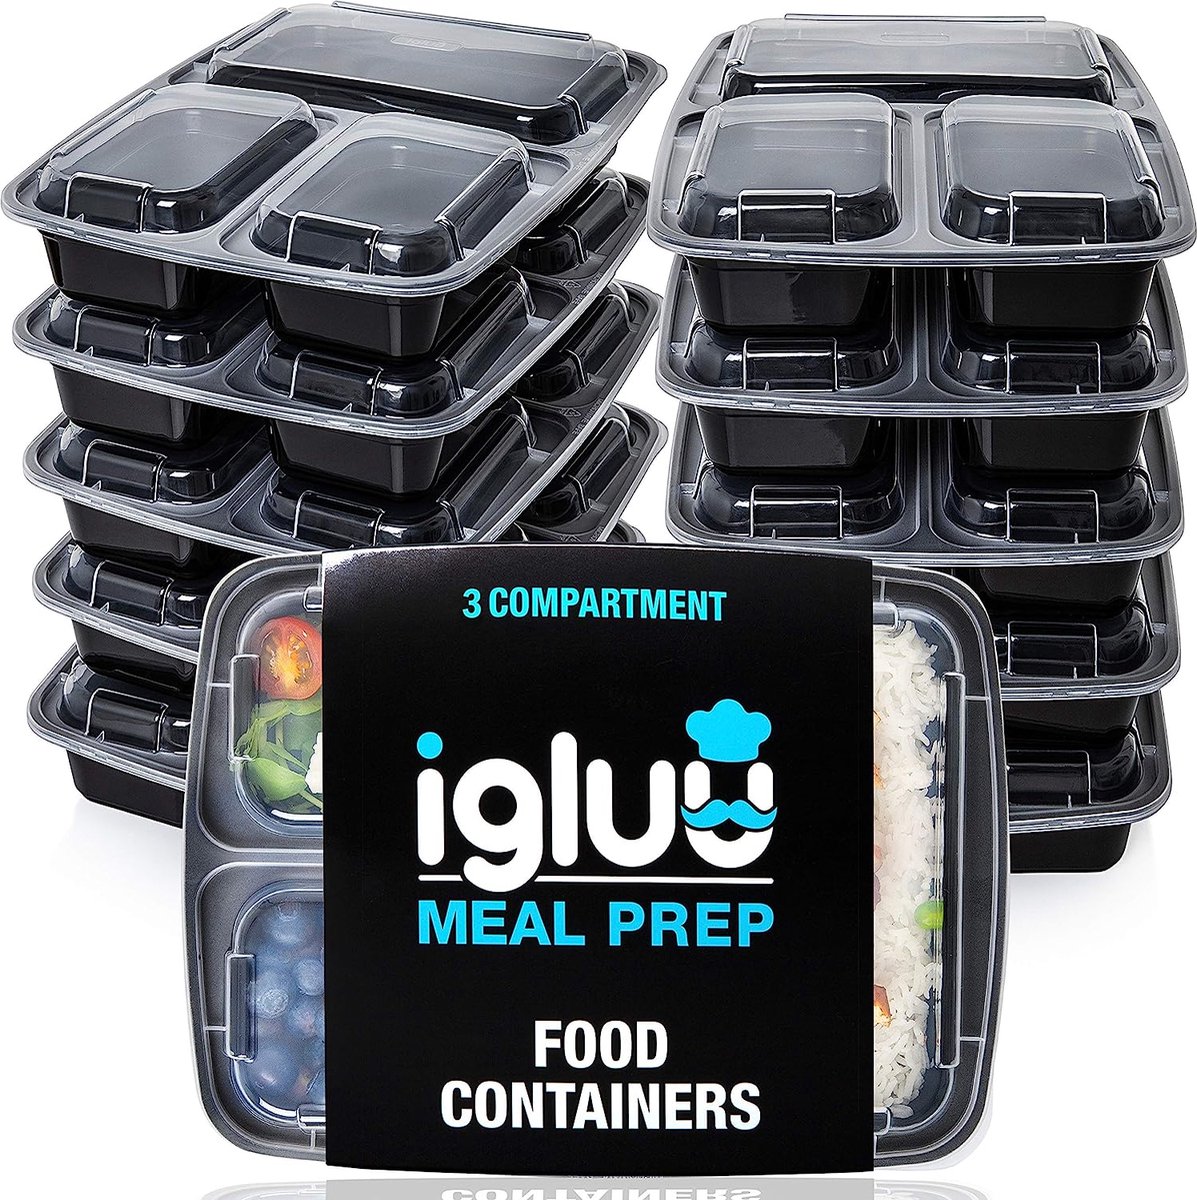 [10 Stuks] 3 Compartimenten BPA Vrij Herbruikbare Meal Prep Containers - Plastic Voedsel Bakjes met Luchtdichte Deksels - Magnetron, Vriezer en Vaatwasserbestendig - Stapelbare Bento Box (900 ml)